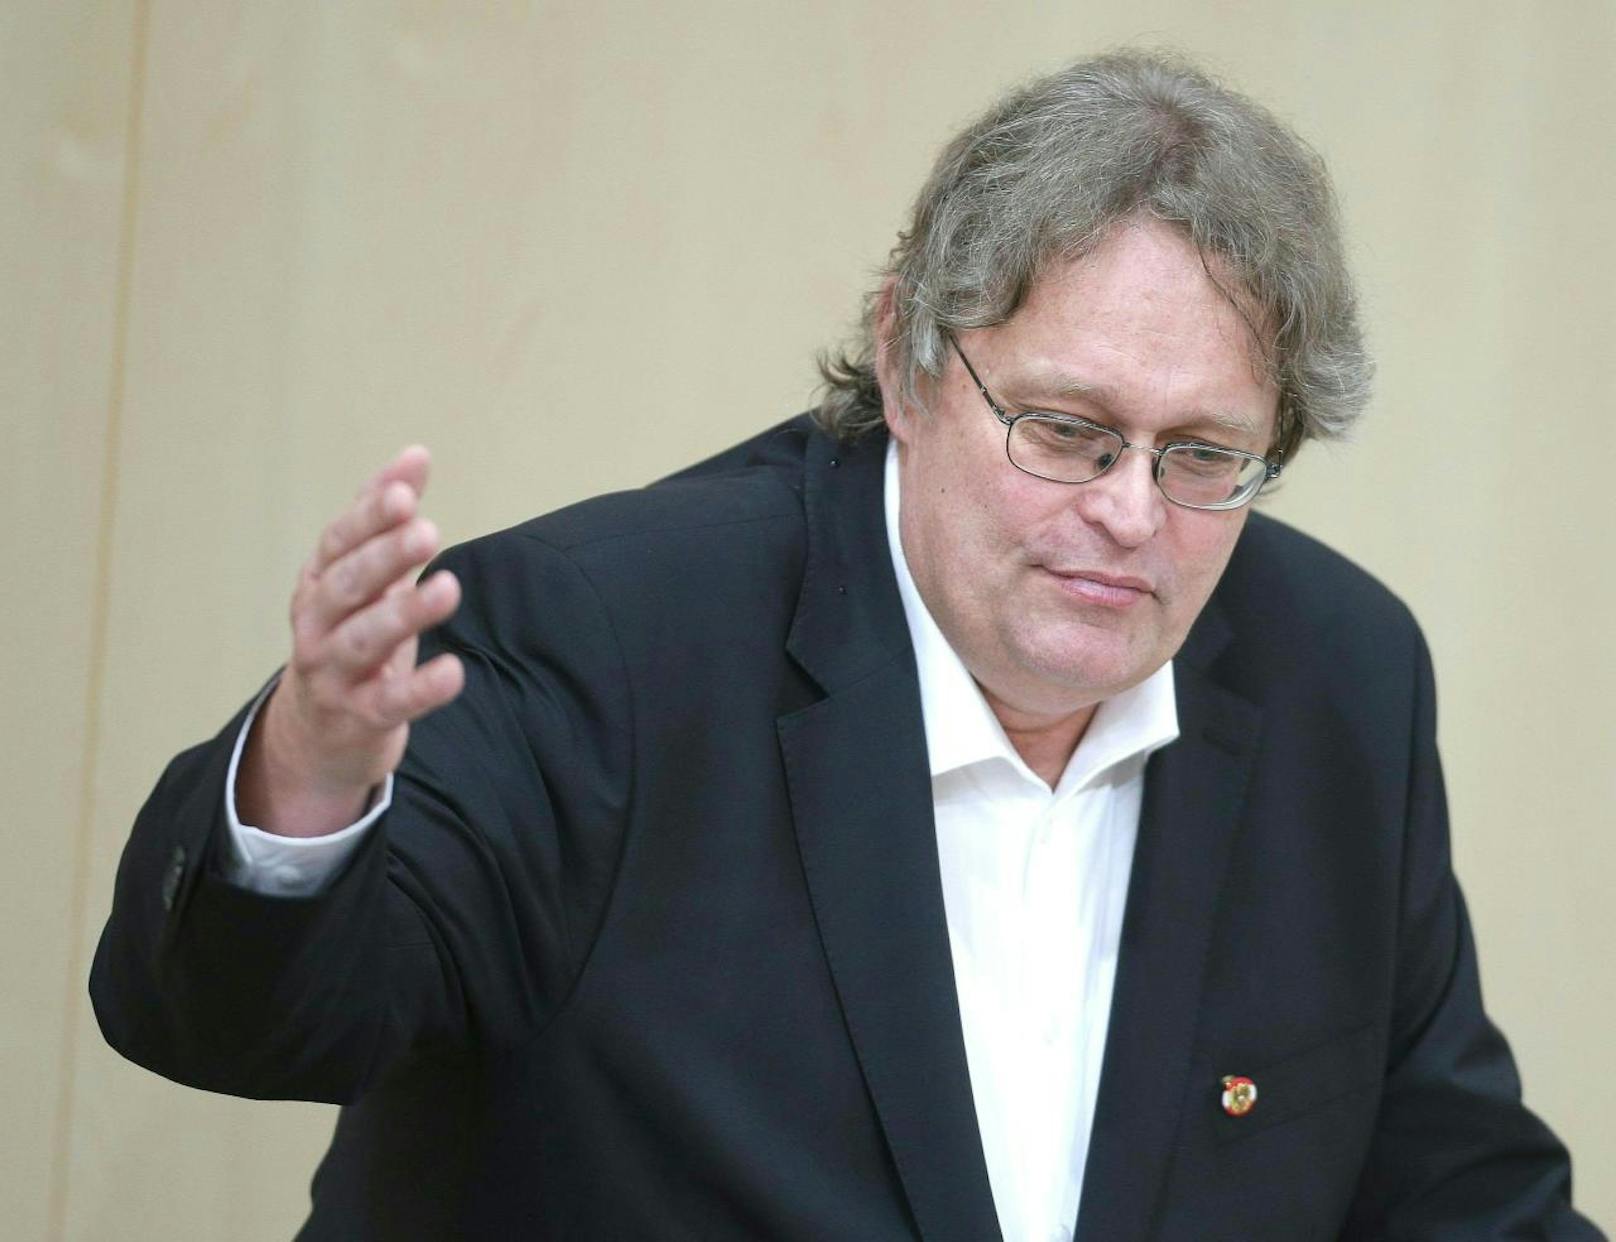 Der Klubchef der Liste Pilz, Peter Kolba, sprach von "Medienjustiz" gegen den inzwischen zurückgetretenen Peter Pilz